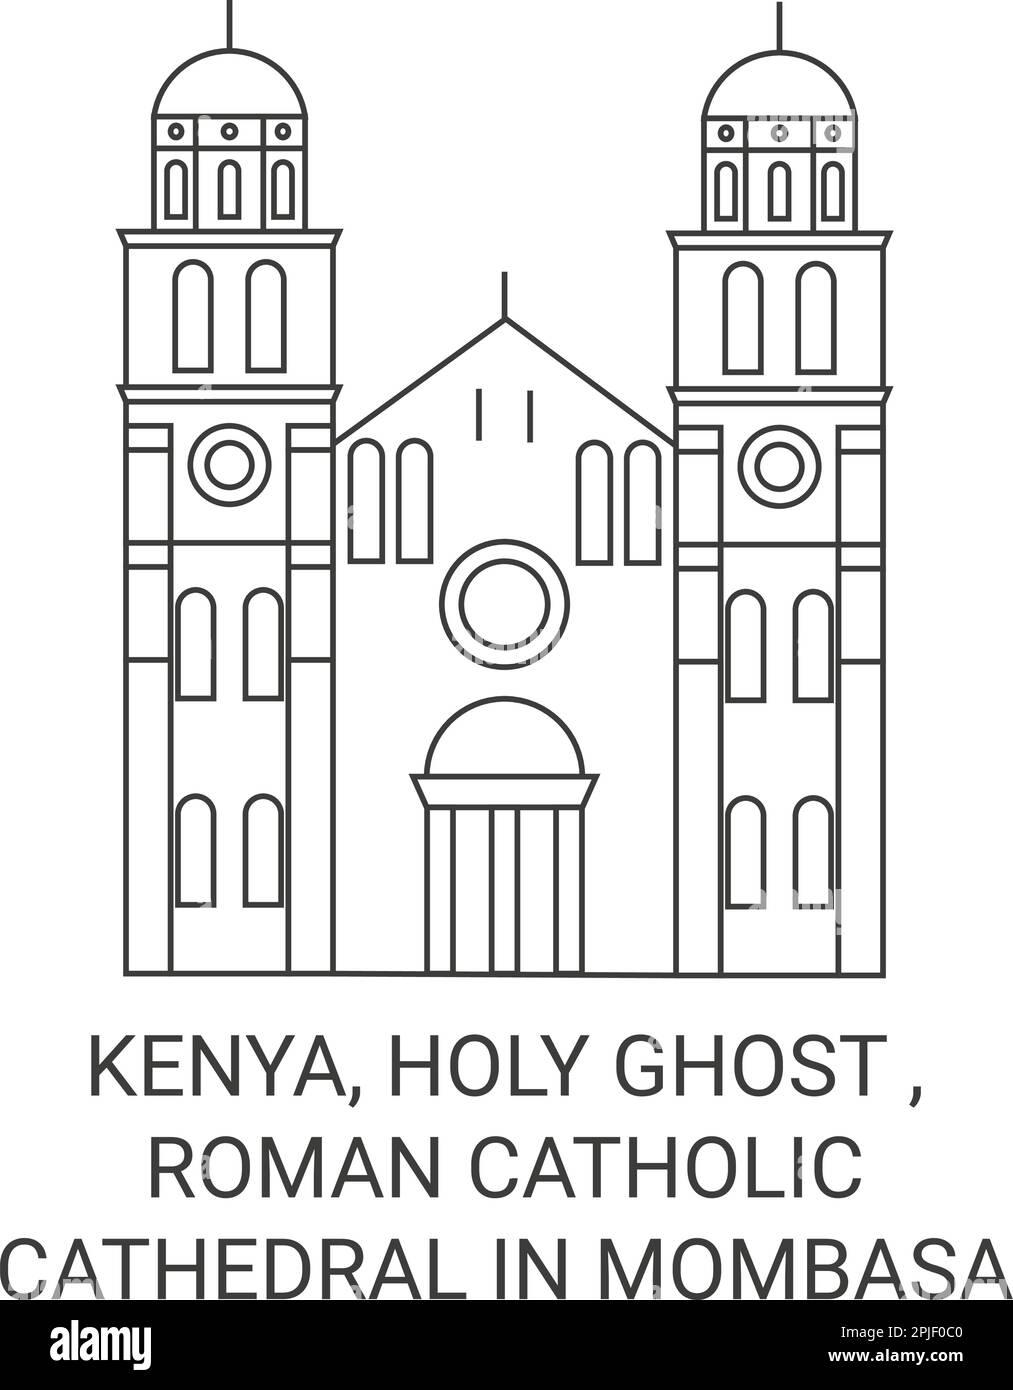 Kenia, Heiliger Geist, römisch-katholische Kathedrale in Mombasa reisen Wahrzeichen-Vektordarstellung Stock Vektor